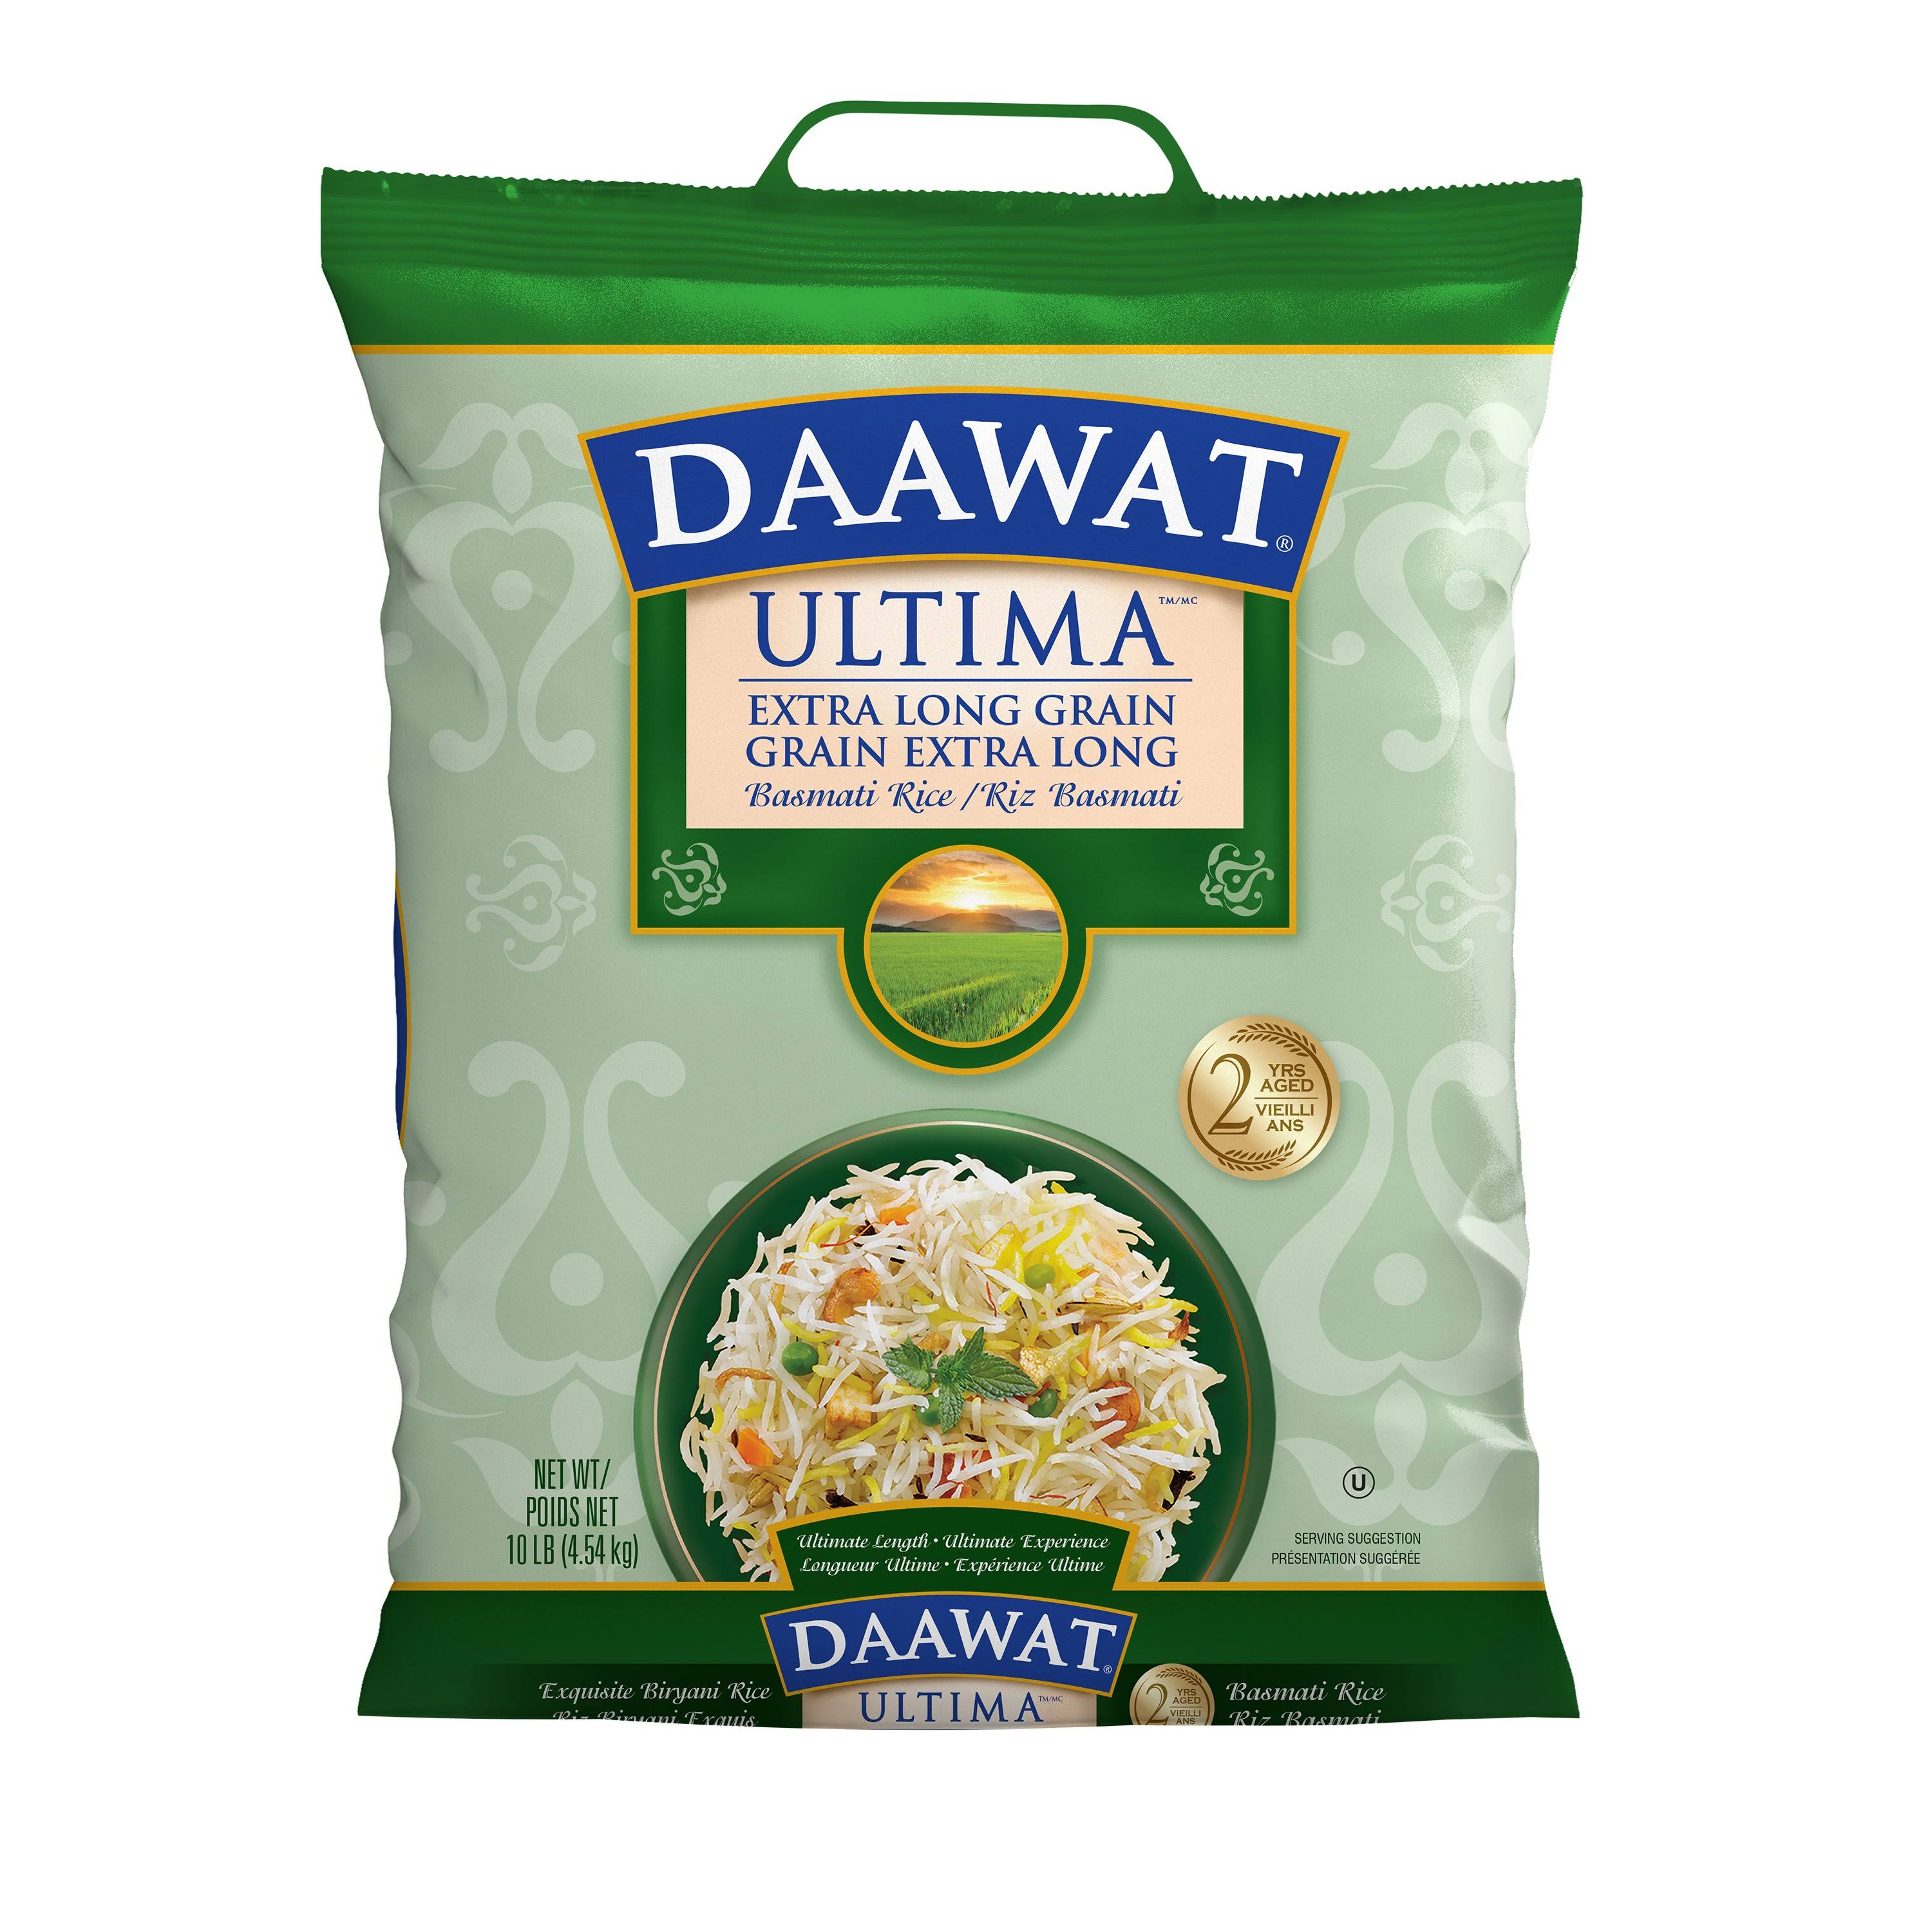 Daawat Ultima Extra Long Grain Basmati Rice - 10lbs